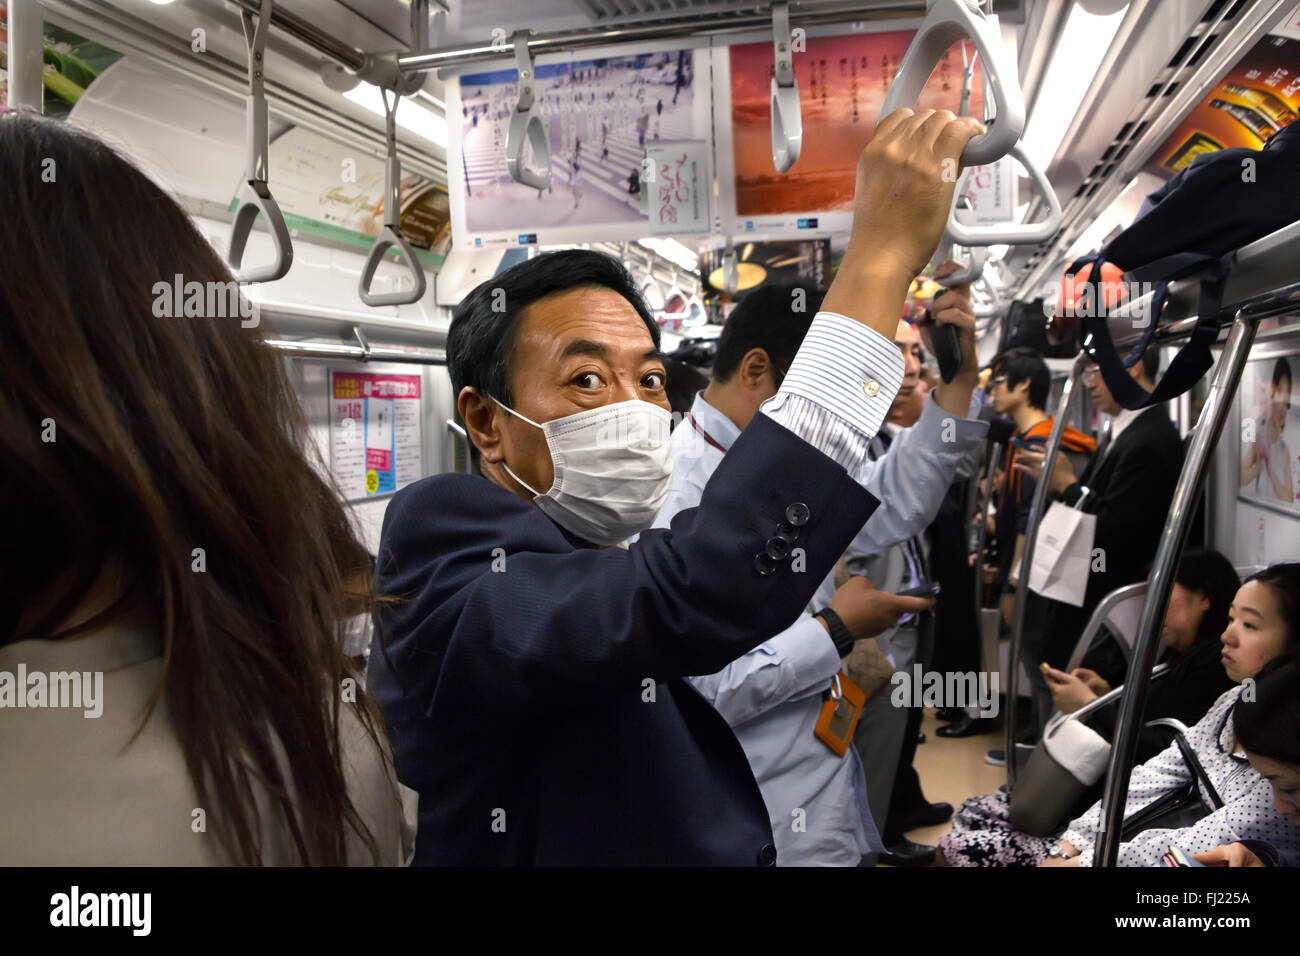 Business Mann mit Mundschutz in den frühen Morgen in der U-Bahn von Tokio,  Japan Stockfotografie - Alamy